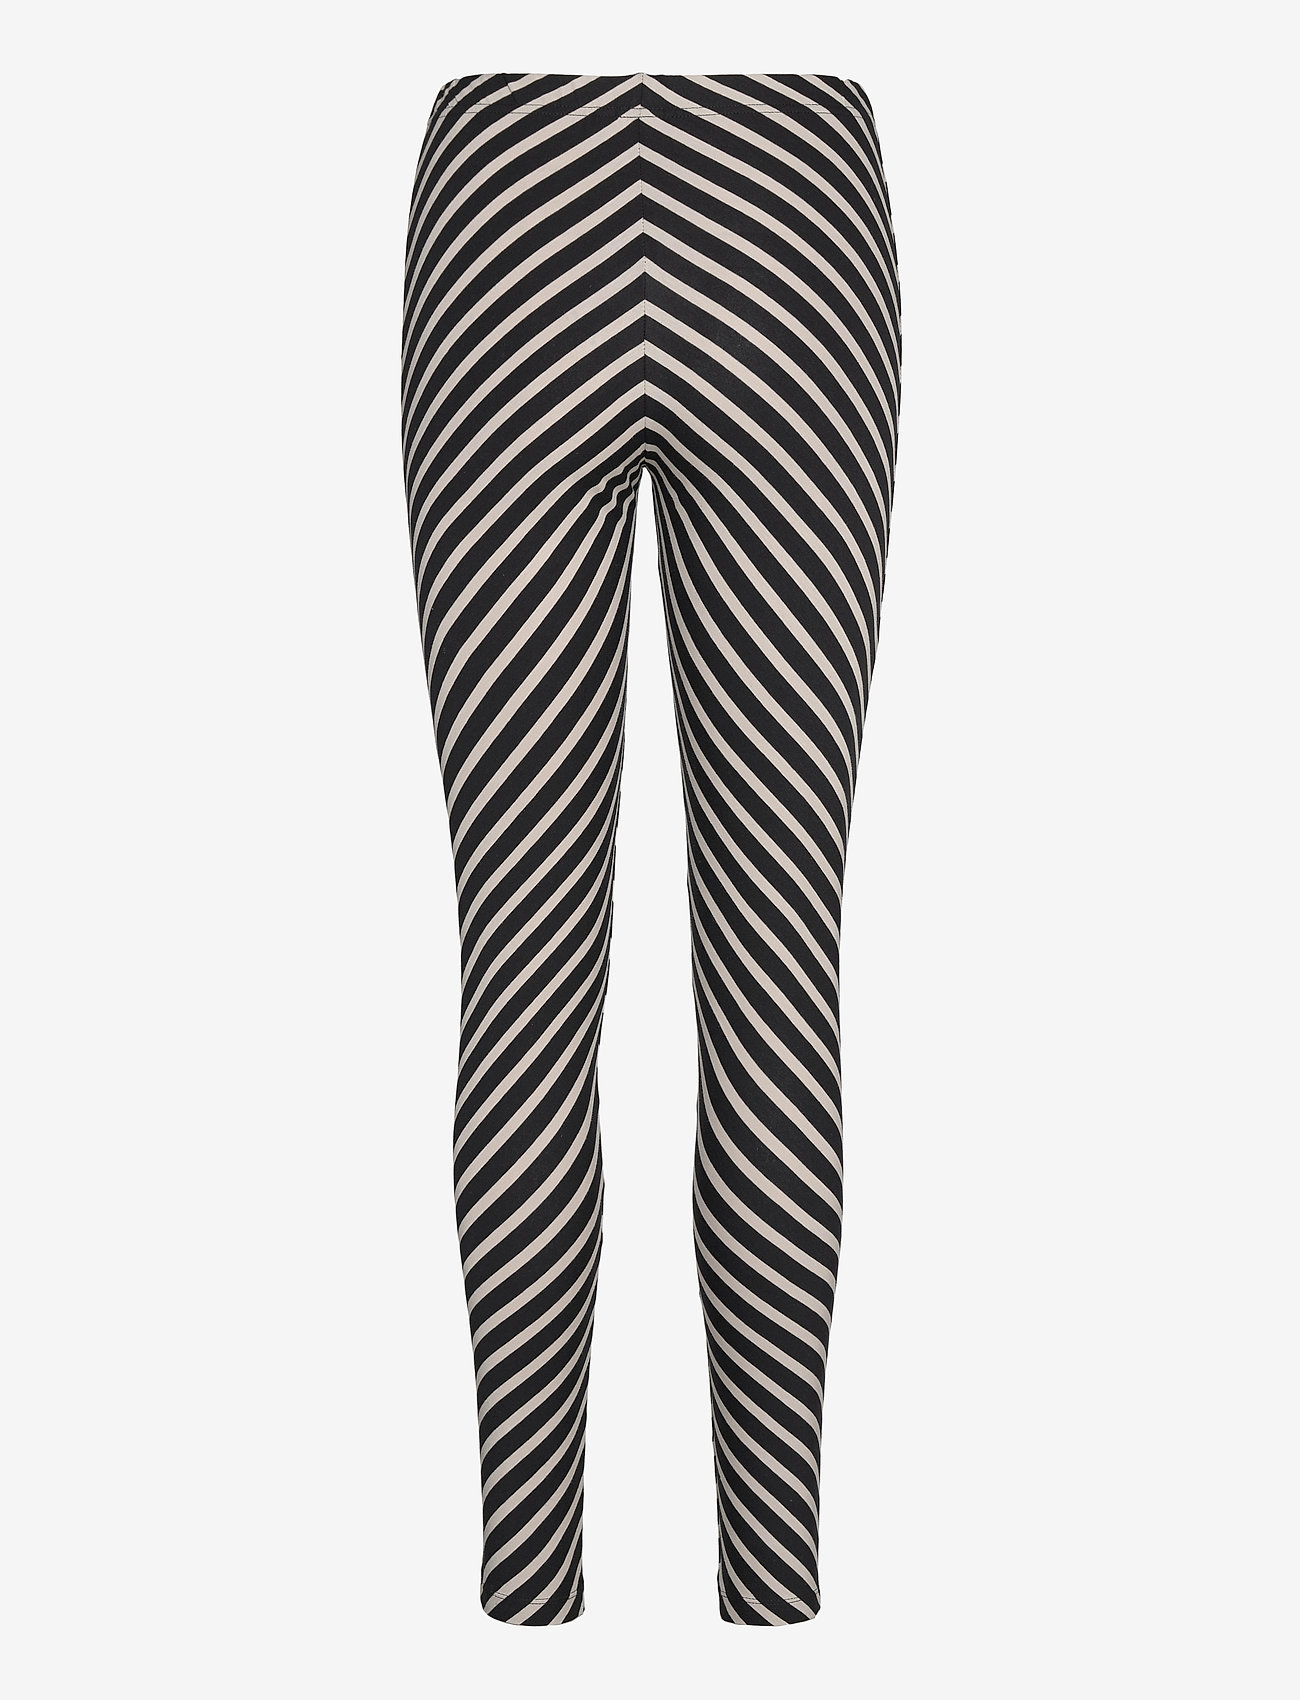 Papu - STRIPE LEGGINGS - legginsit - multicolor - 1